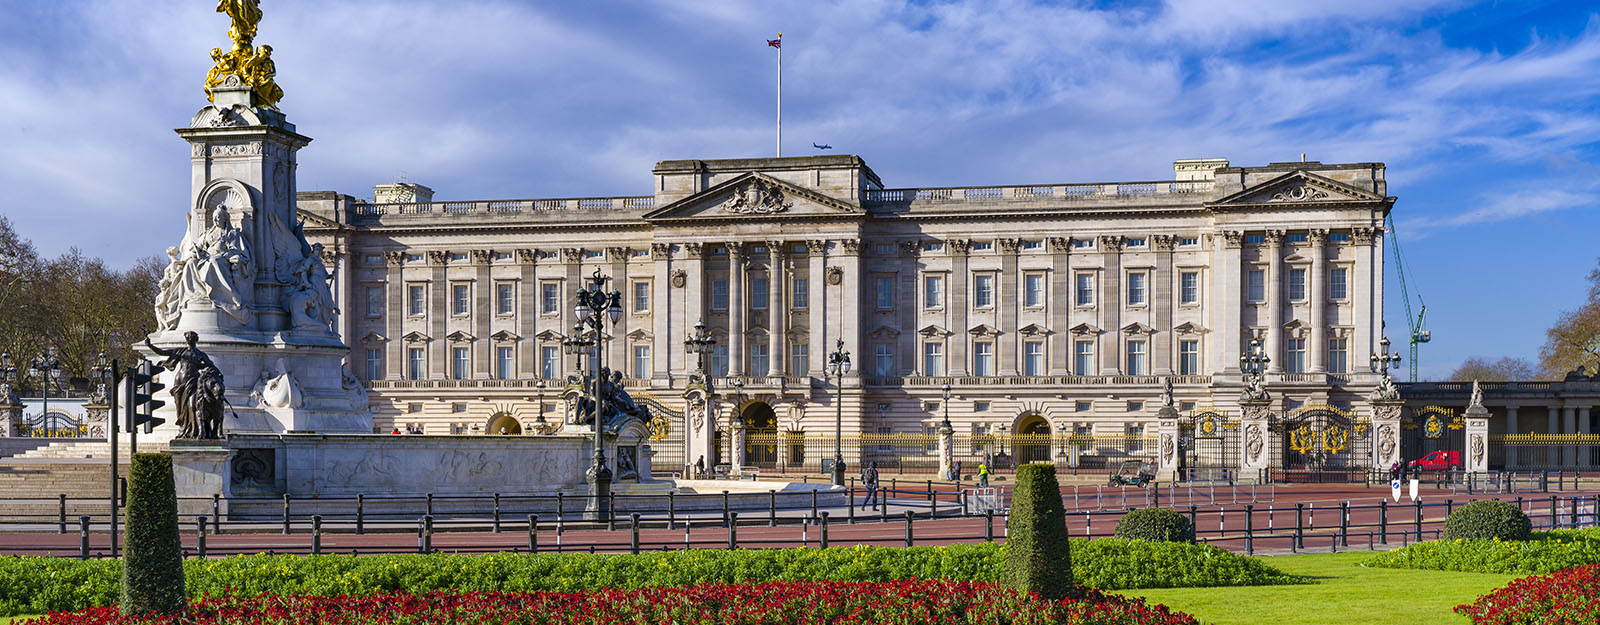 El palacio de Buckingham.